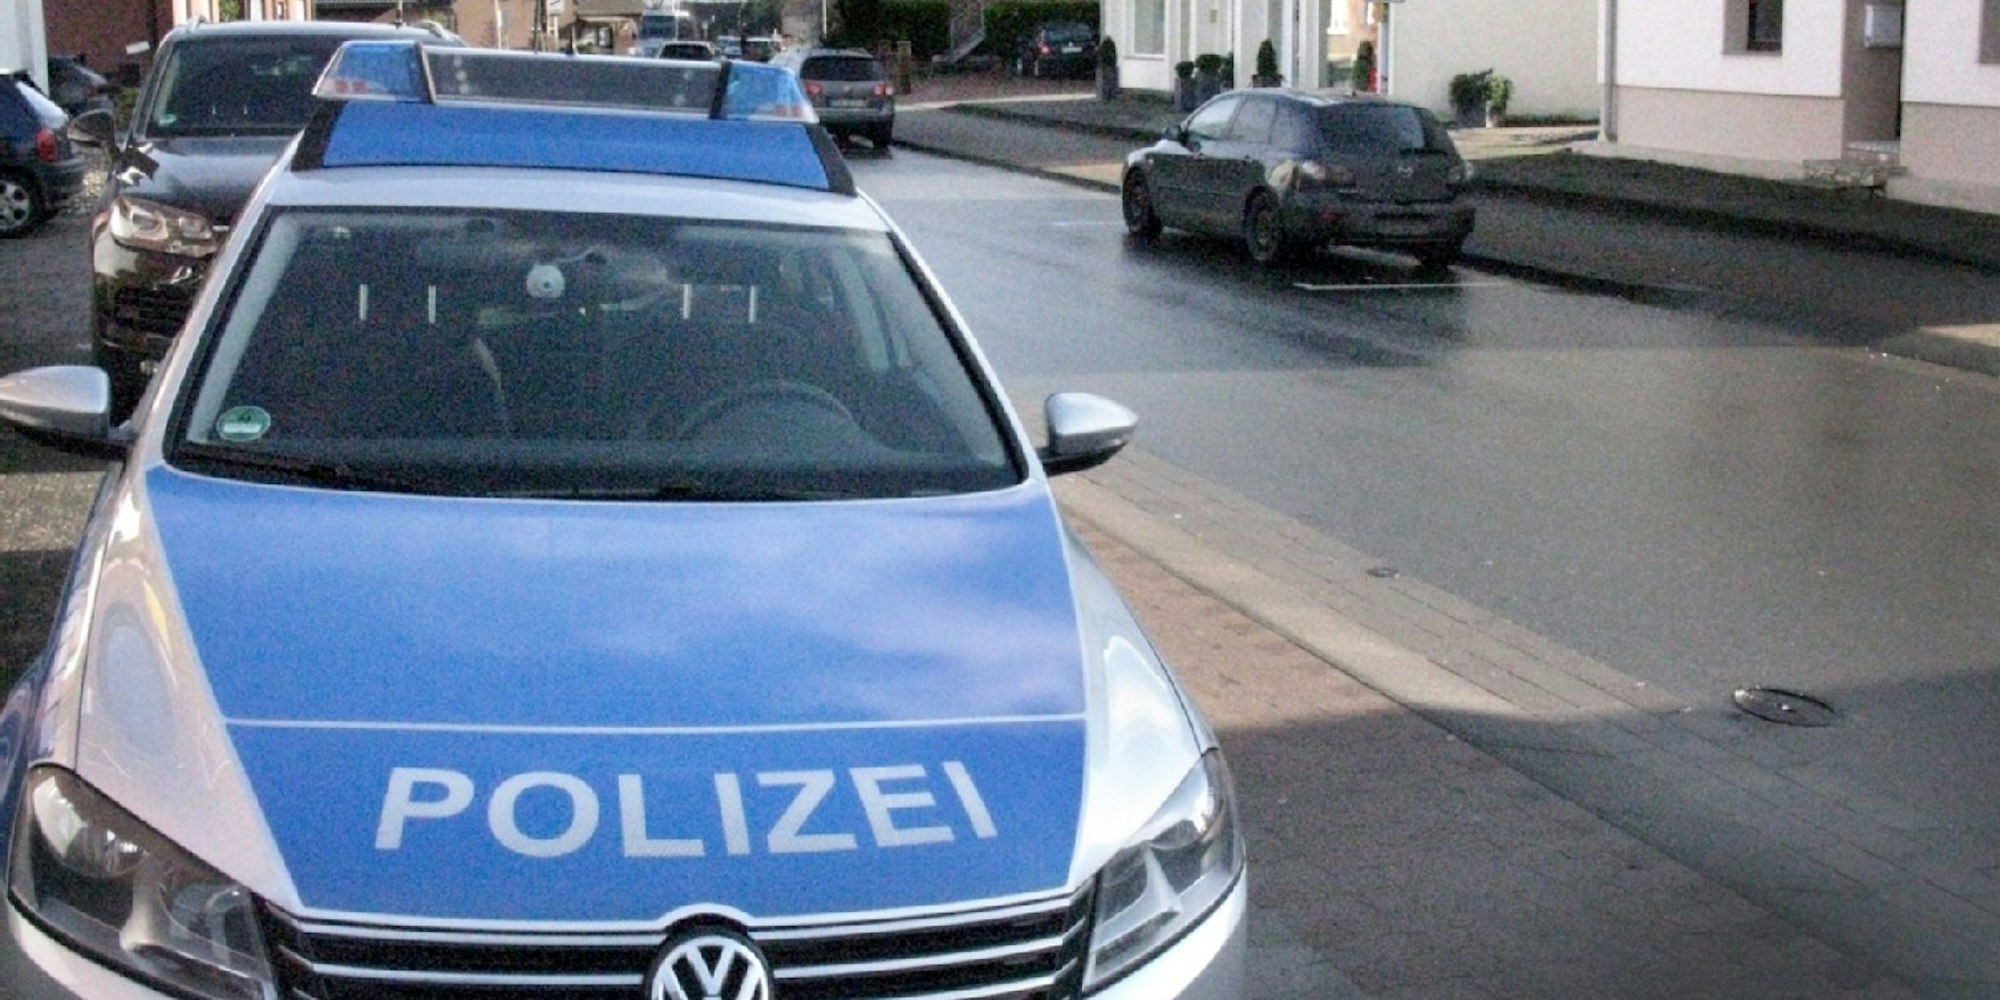 Ein Polizeiwagen am Straßenrand (Symbolbild)